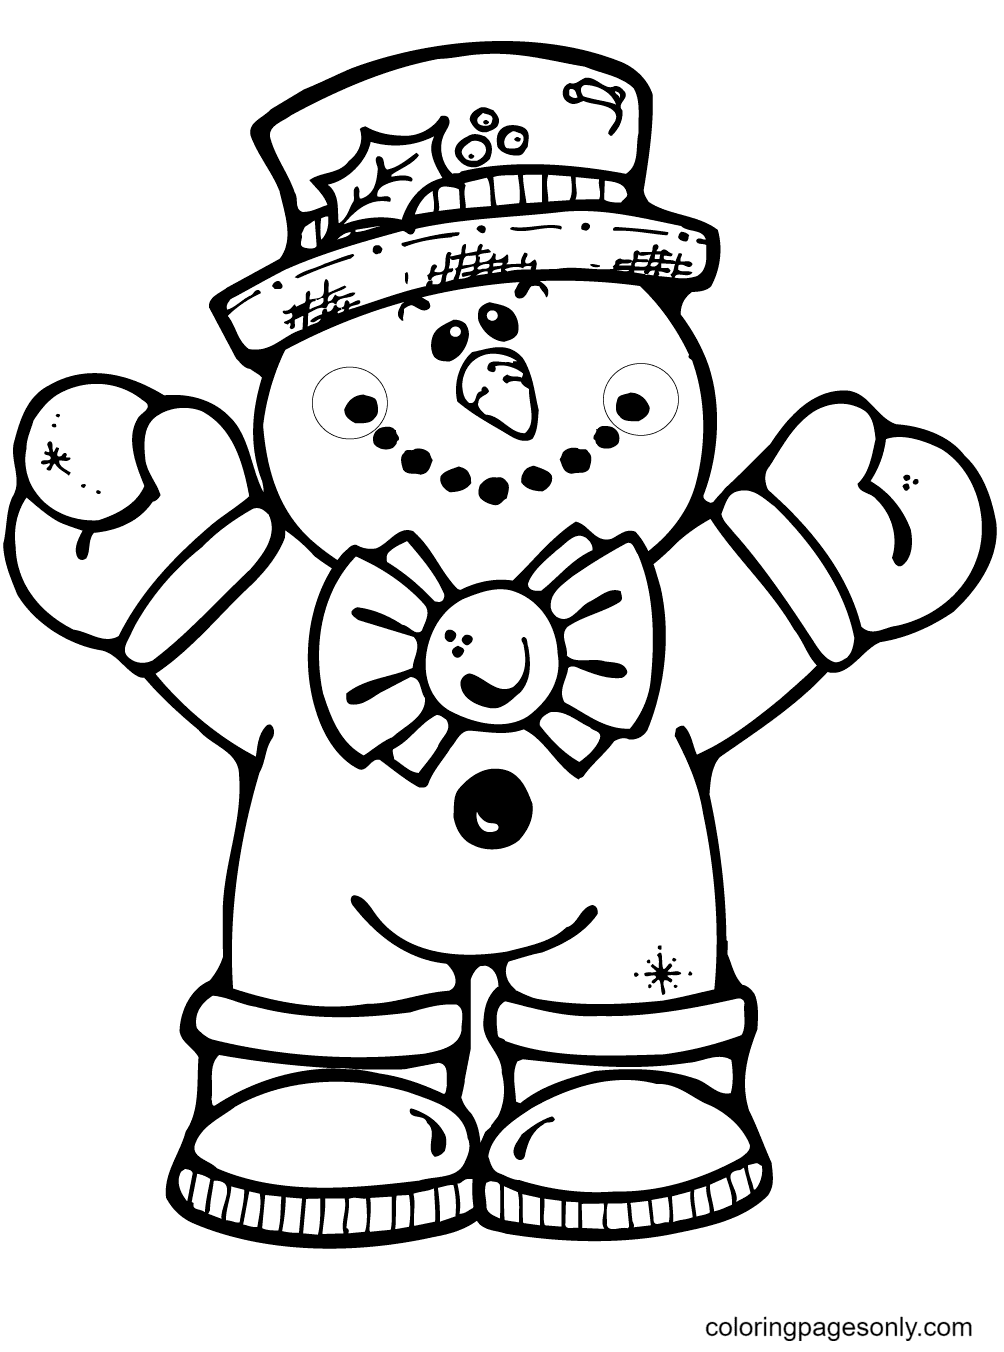 Раскраска Снеговик на английском